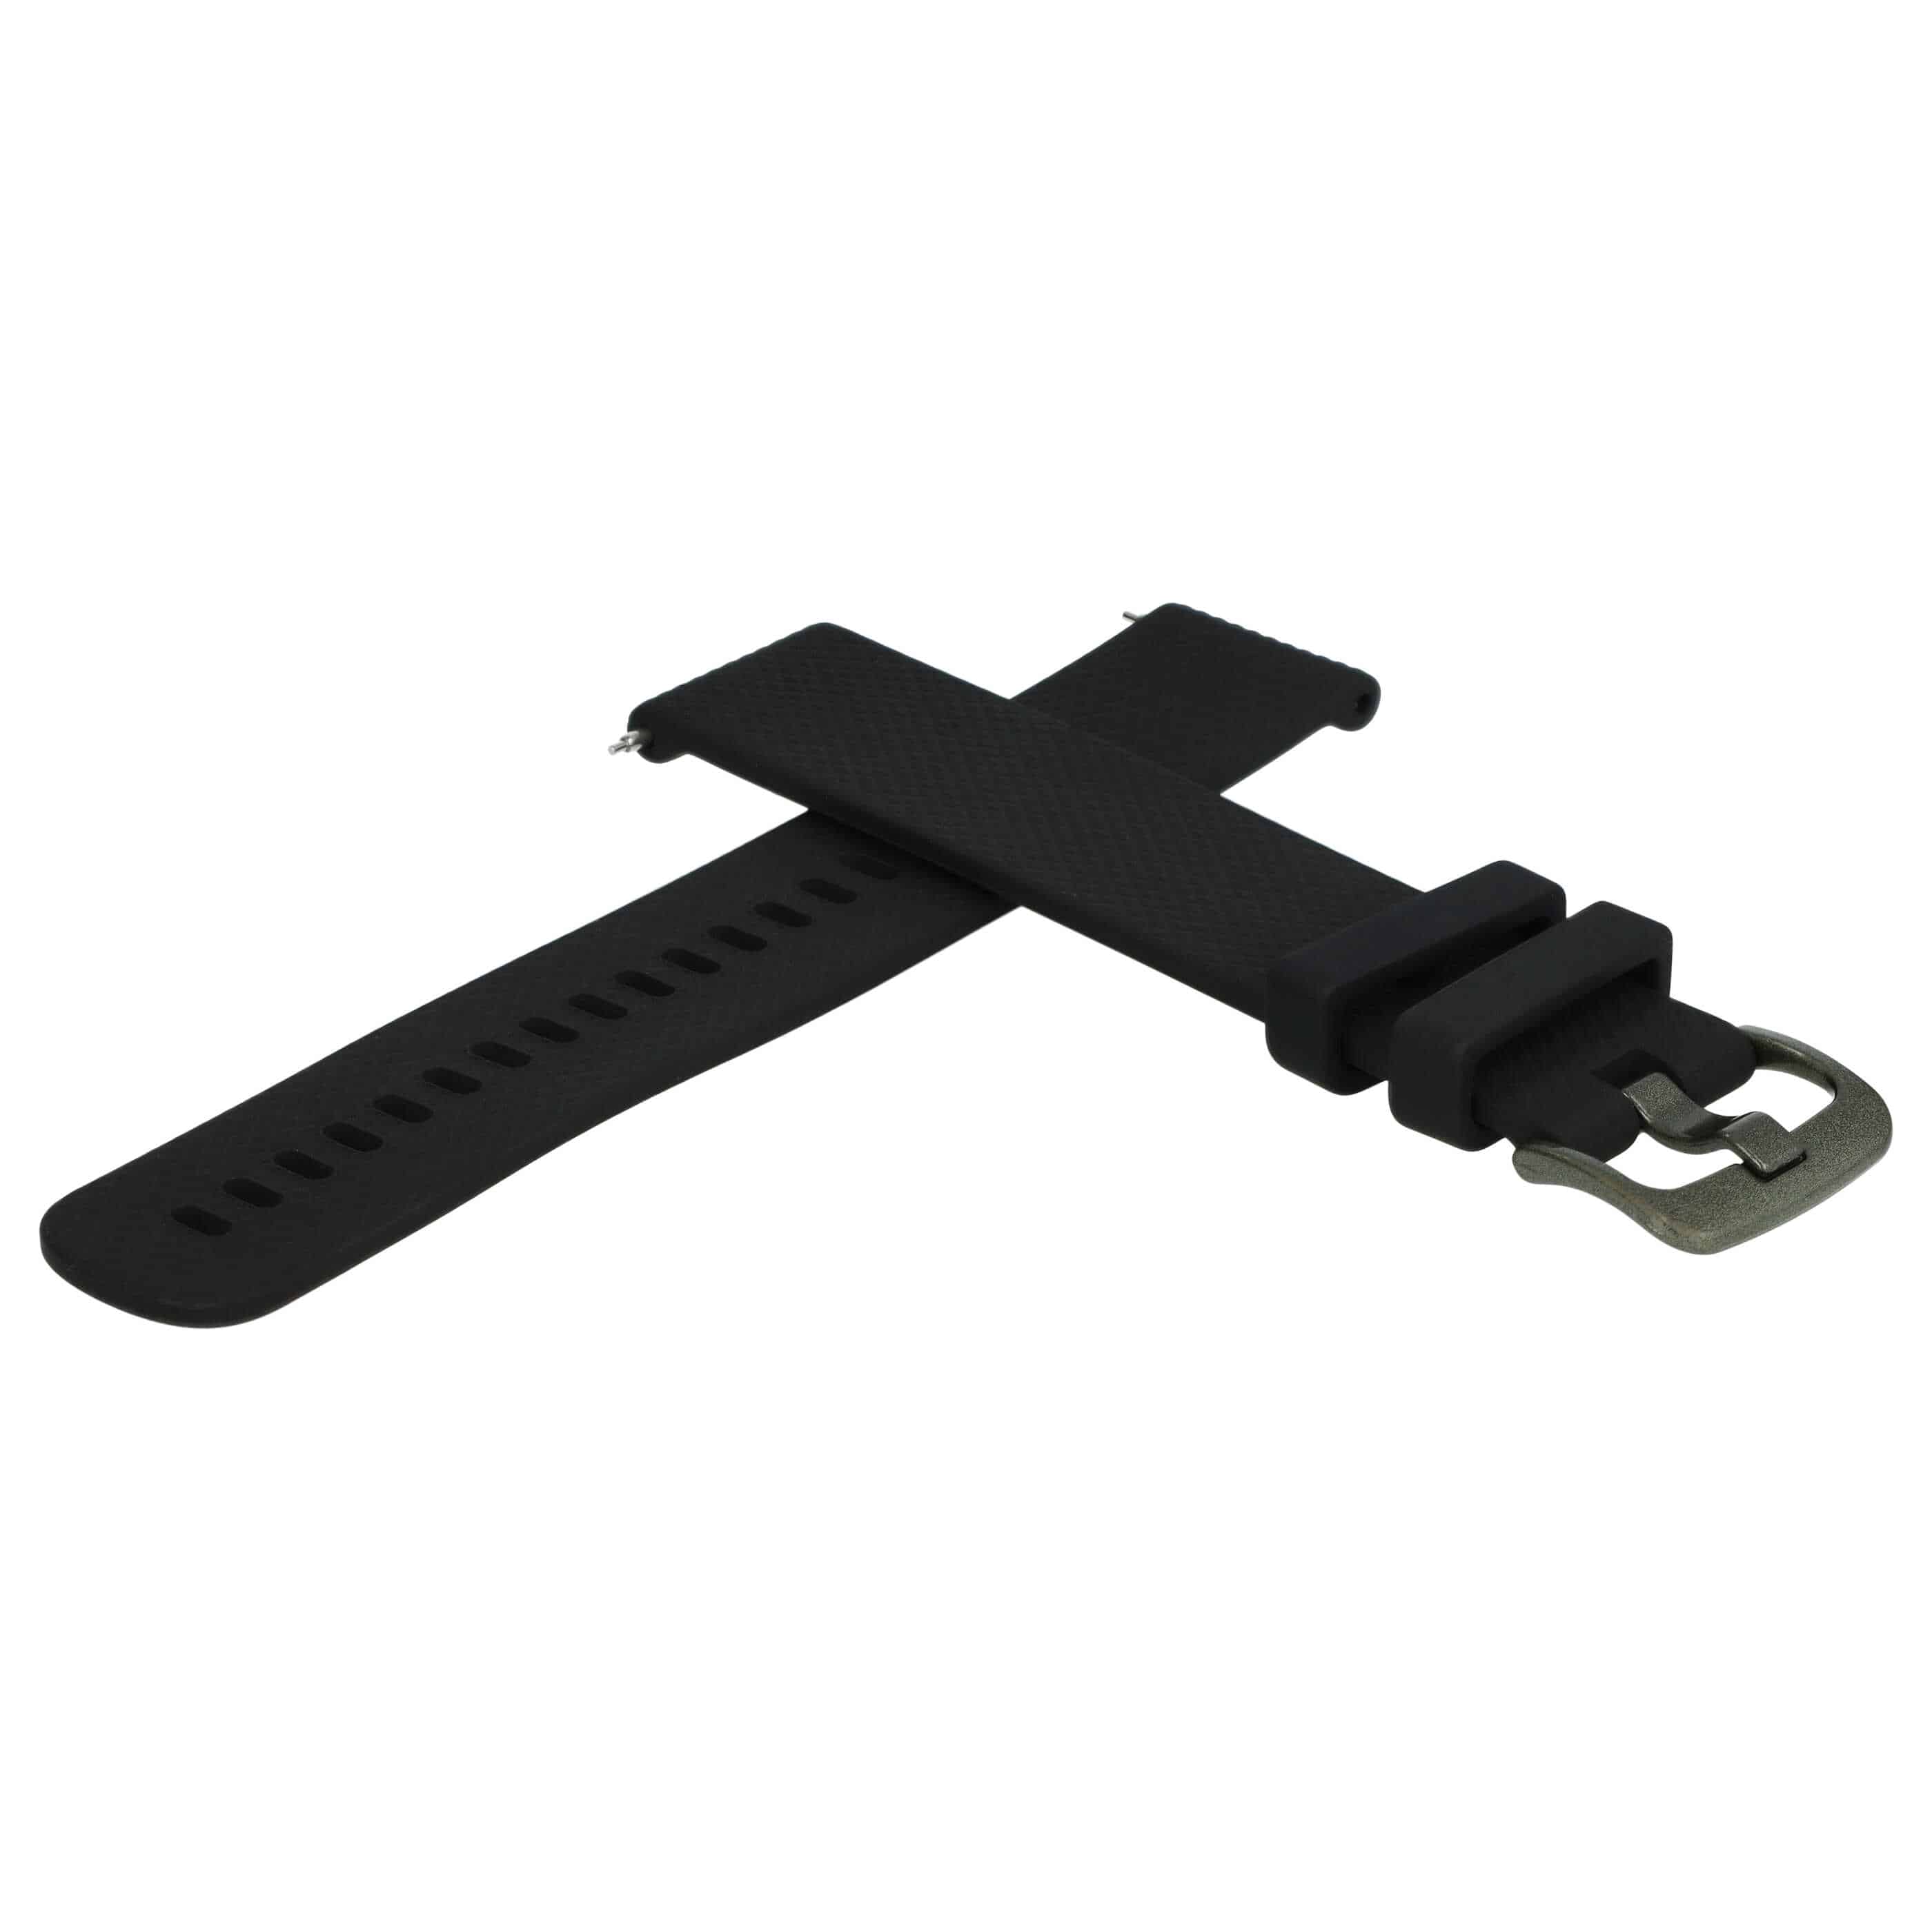 cinturino L per Samsung Galaxy Watch Smartwatch - fino a 260 mm circonferenza del polso, silicone, nero